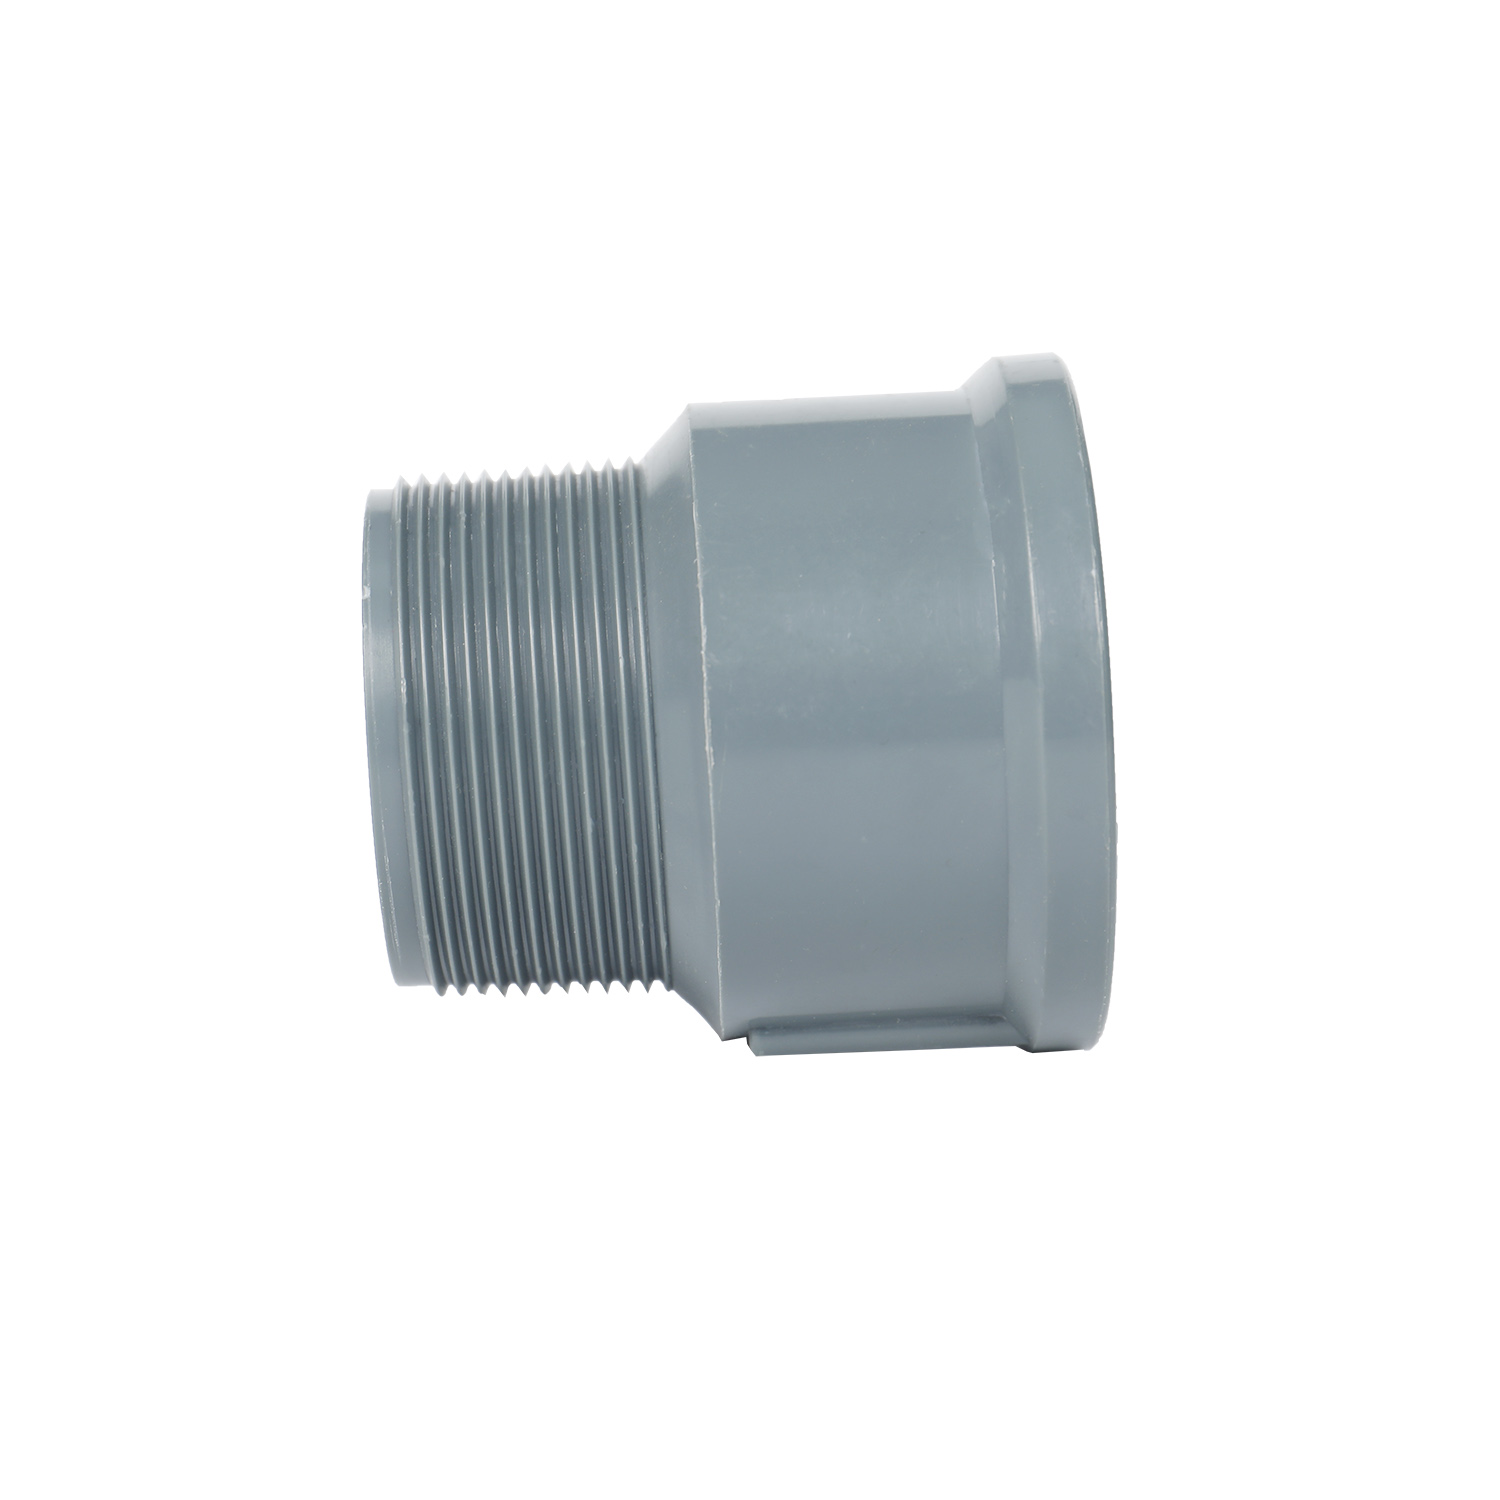 工厂批发高品质塑料 pvc 管道水暖配件制造商 PVC 螺纹公接头